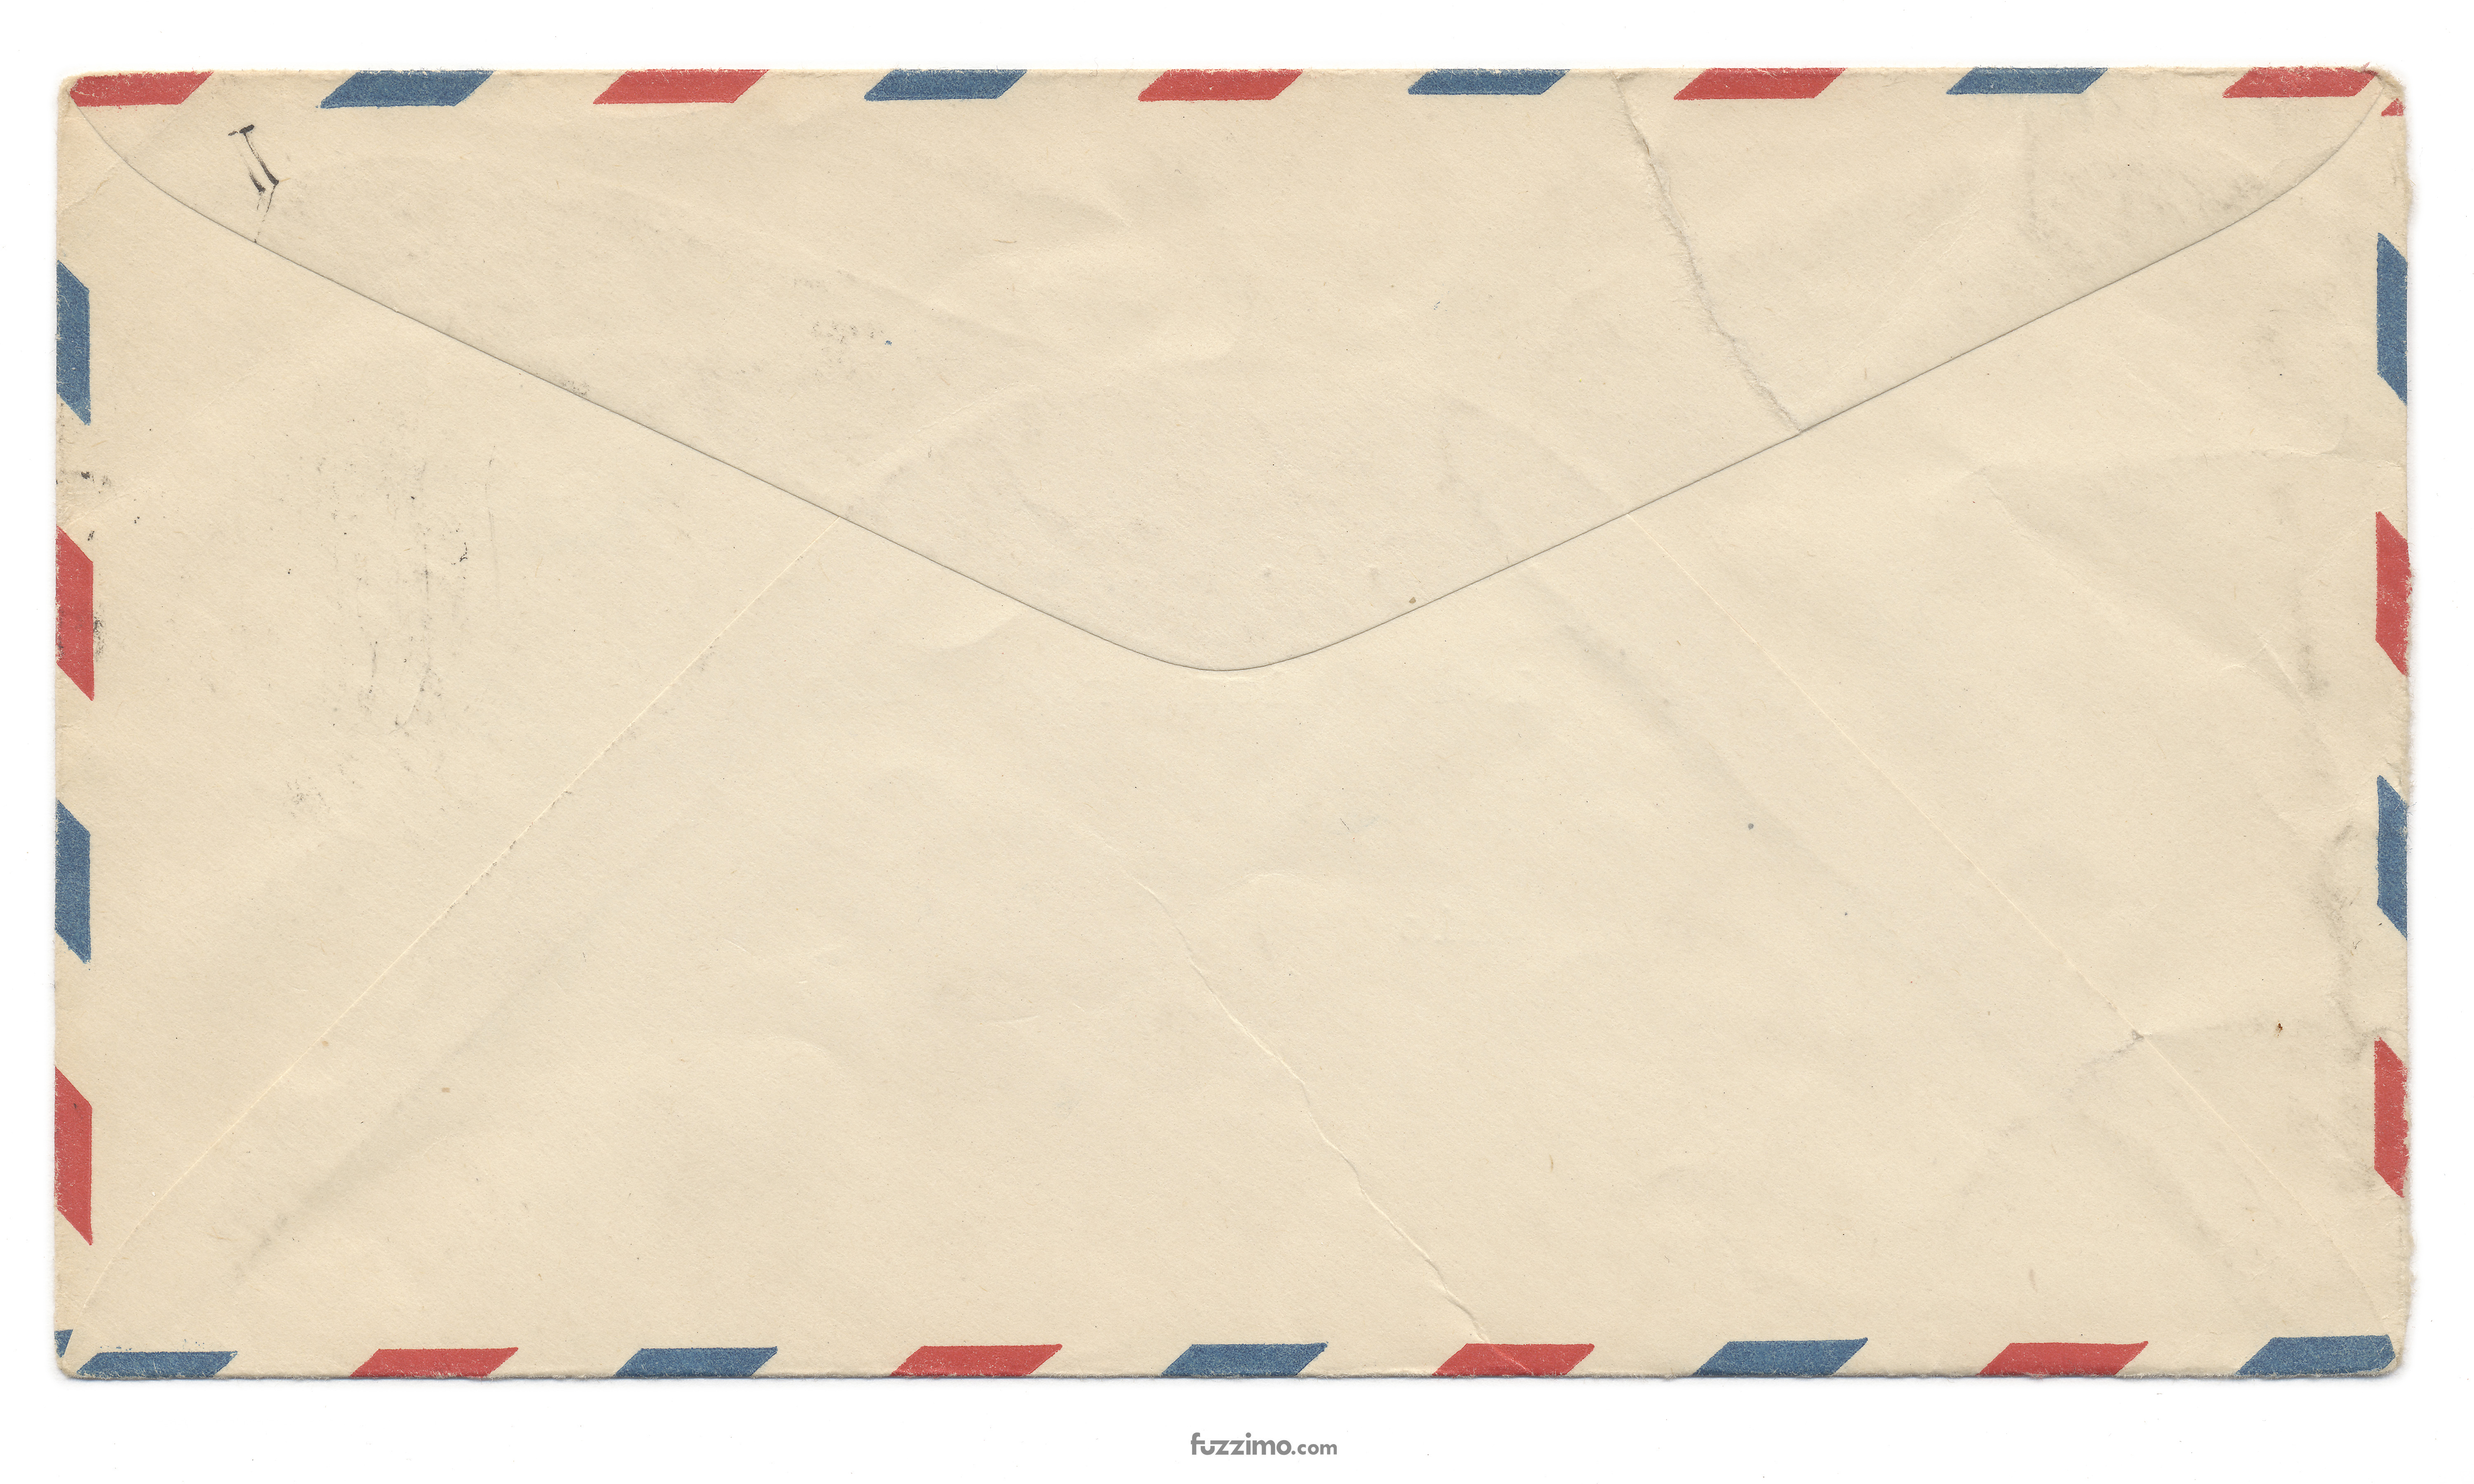 design-dosage-airmail-envelopes0033 | Design Dosage